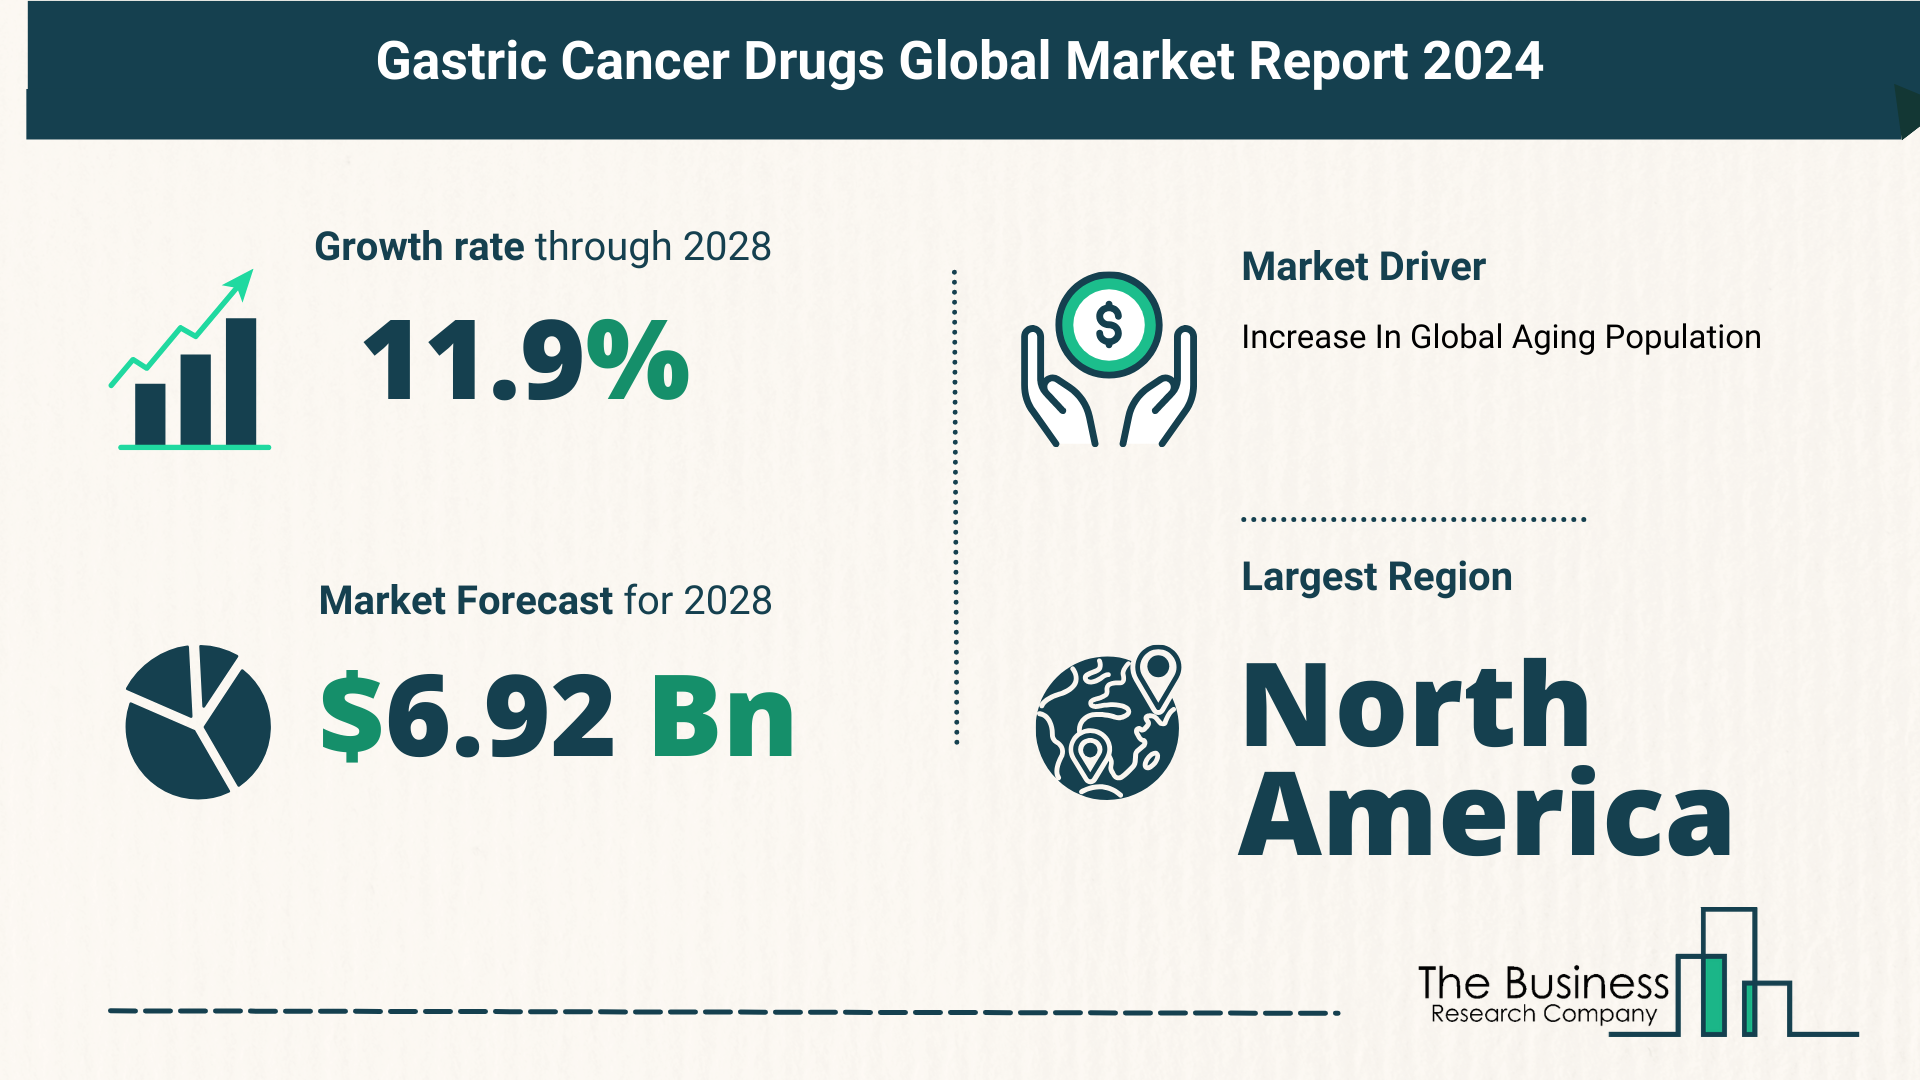 Global Gastric Cancer Drugs Market